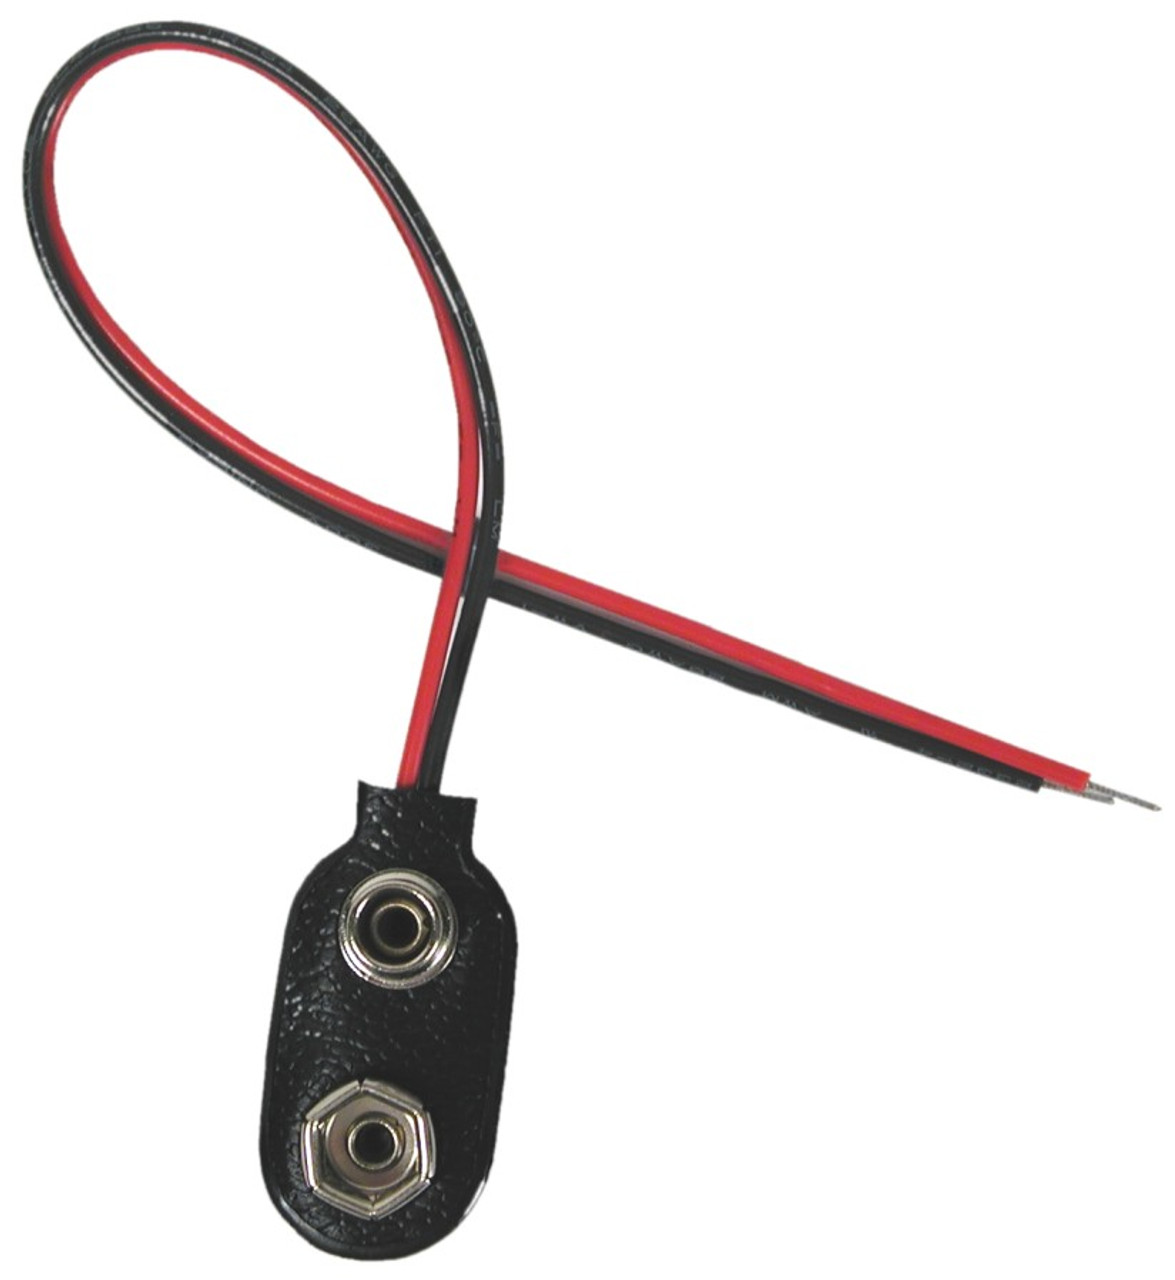 nine volt battery connector